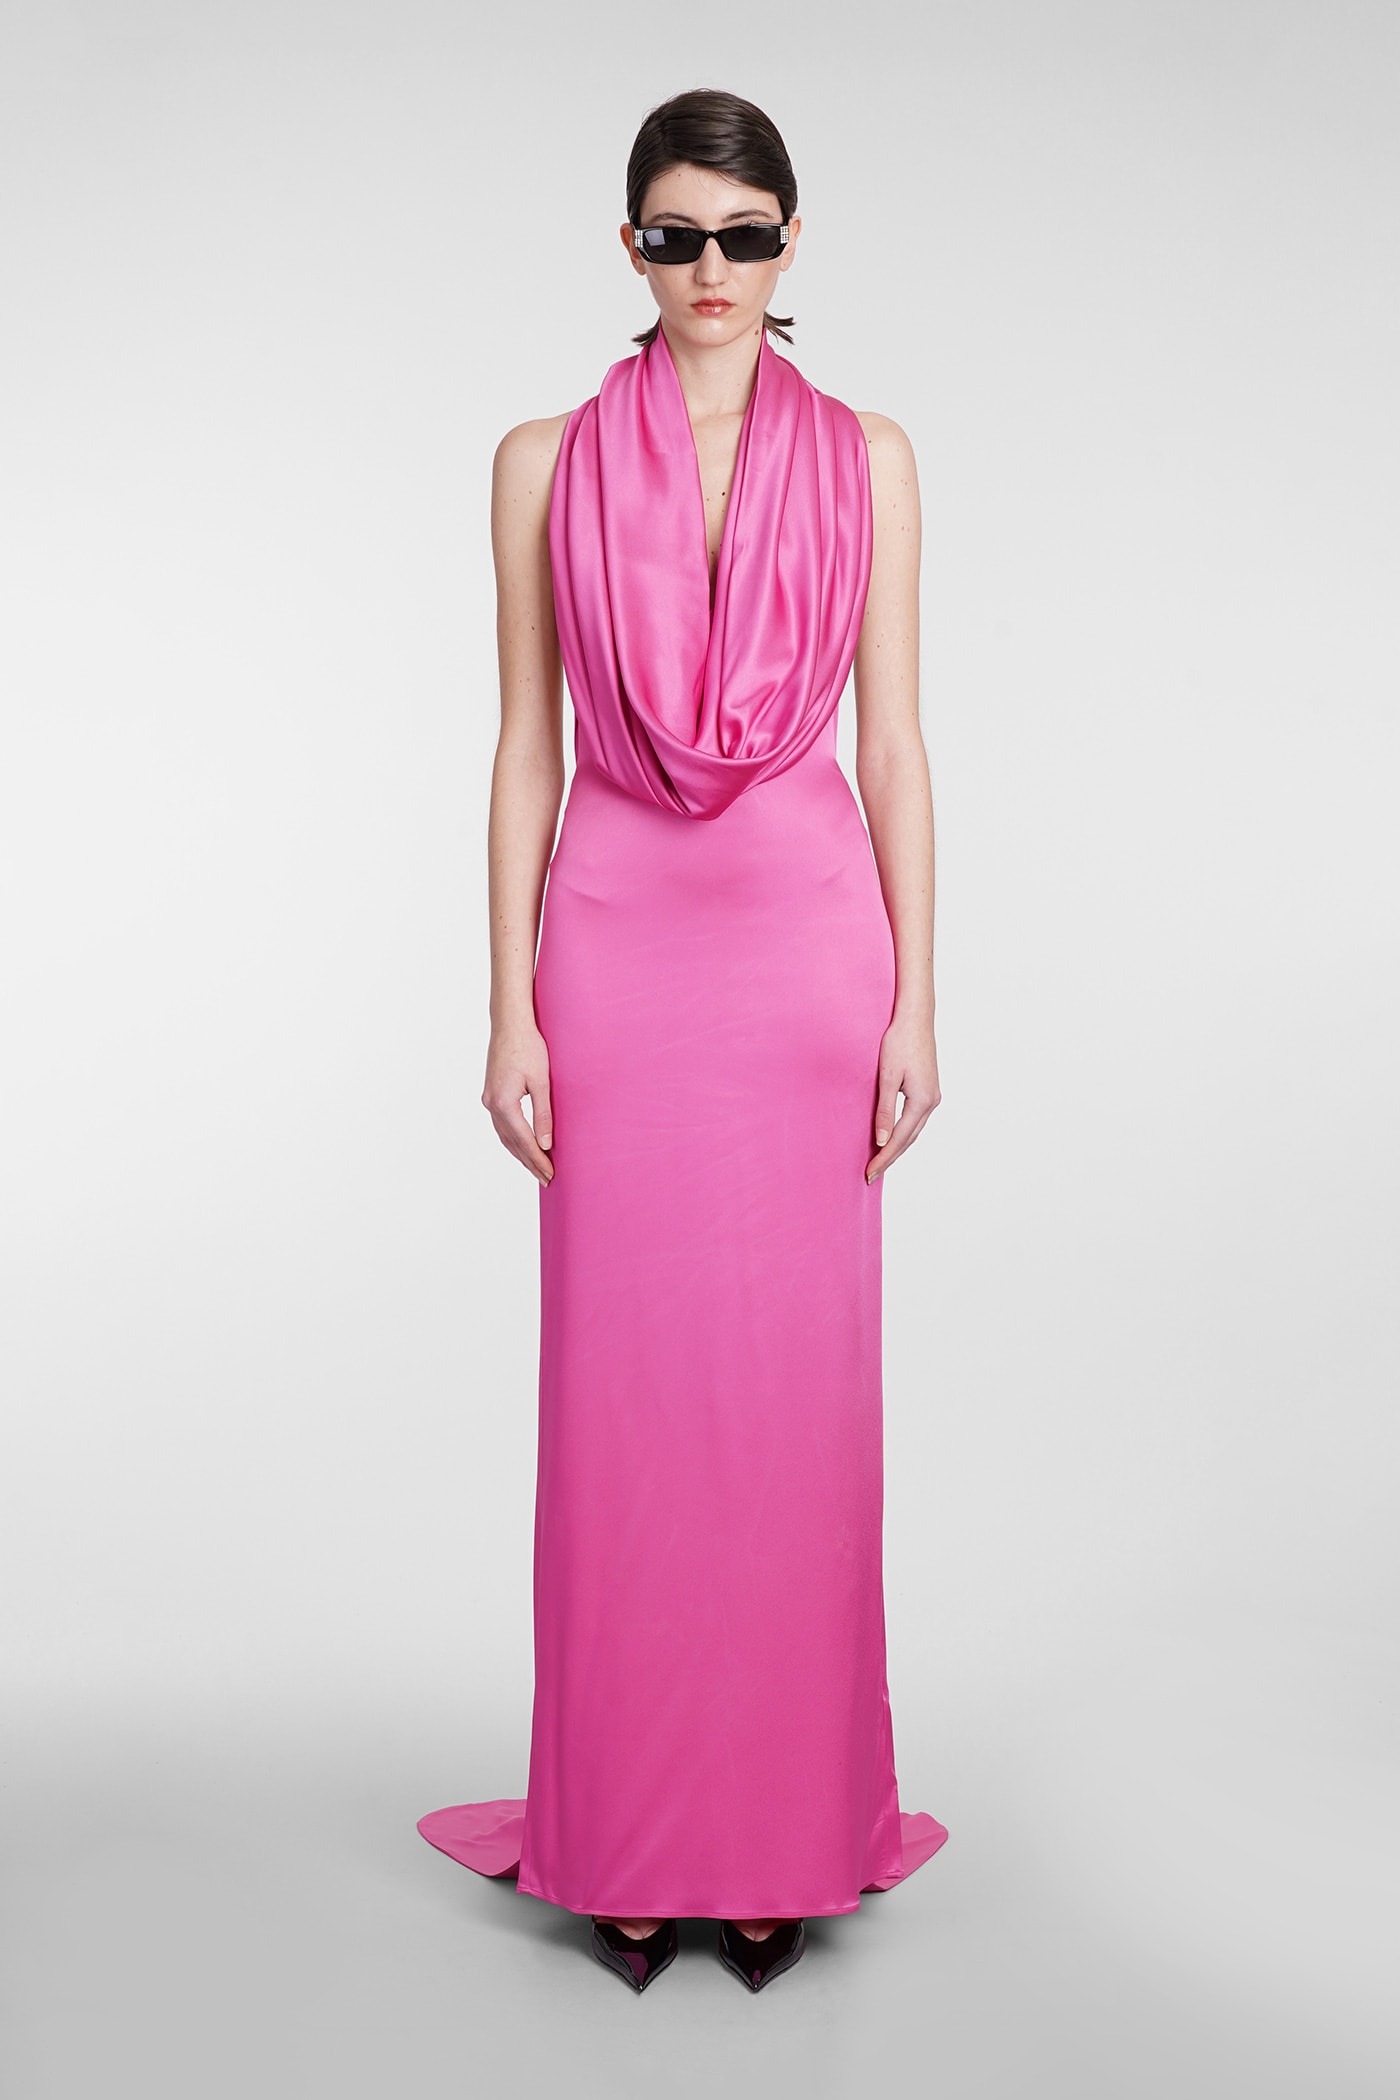 Giuseppe Di Morabito Dress In Rose-pink Acetate